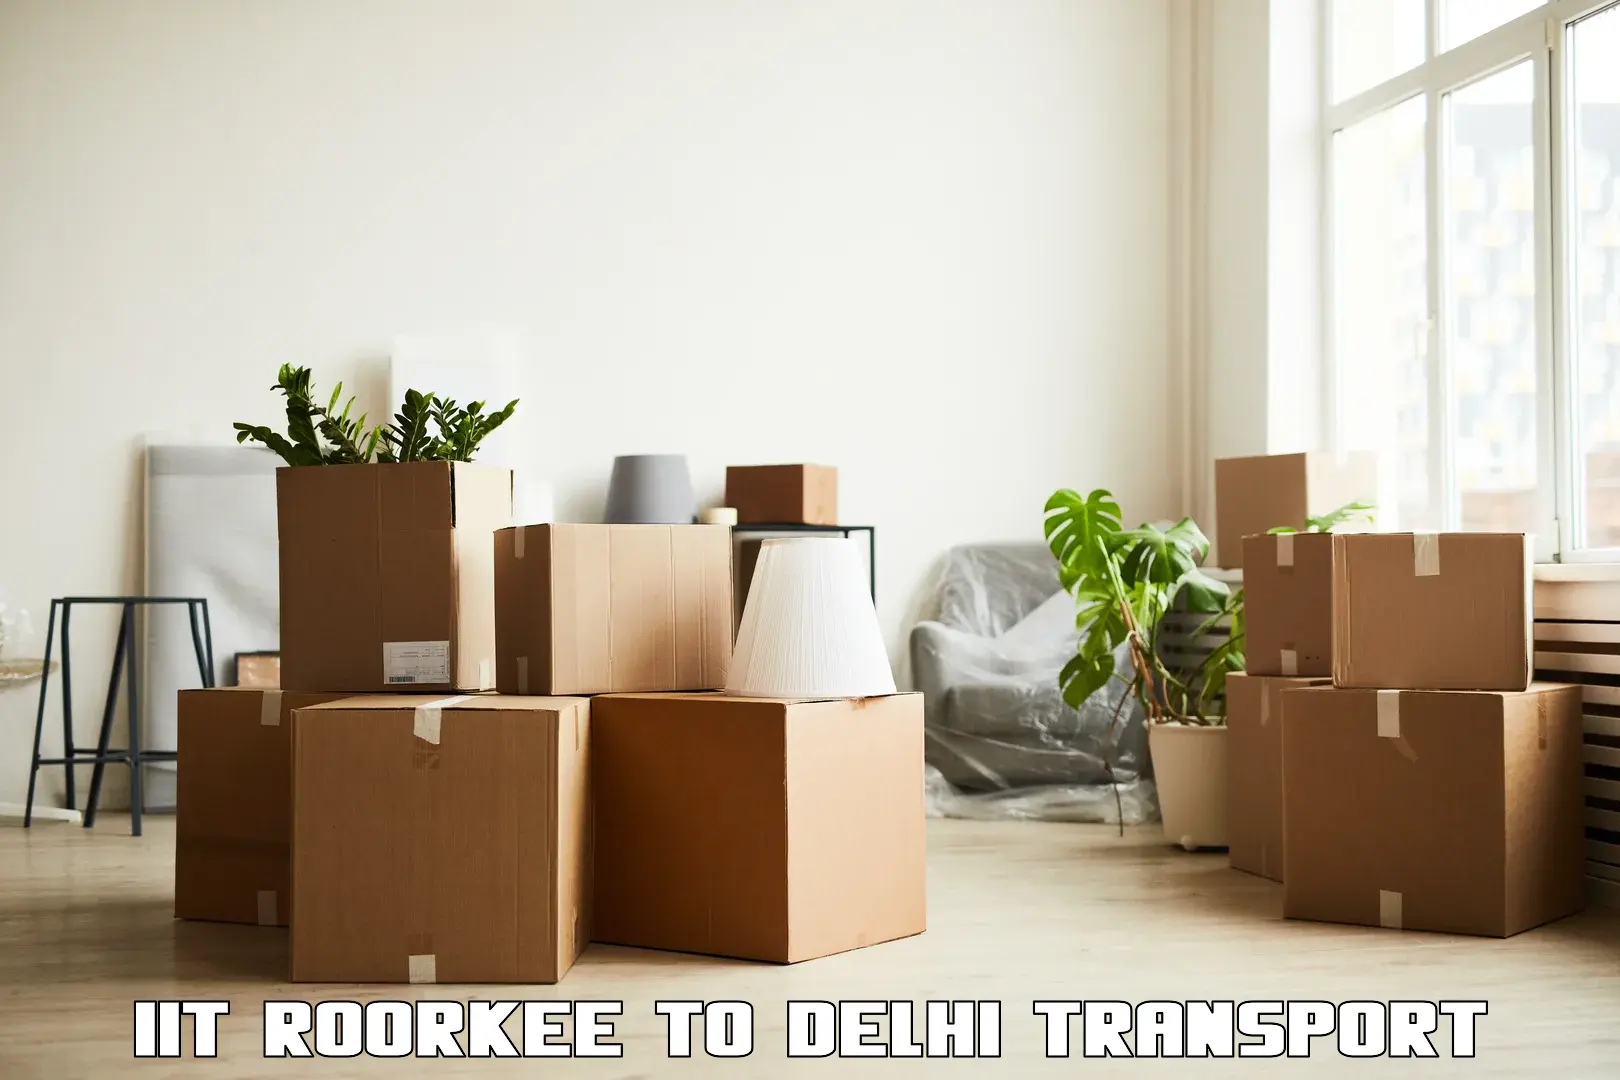 Online transport IIT Roorkee to NCR